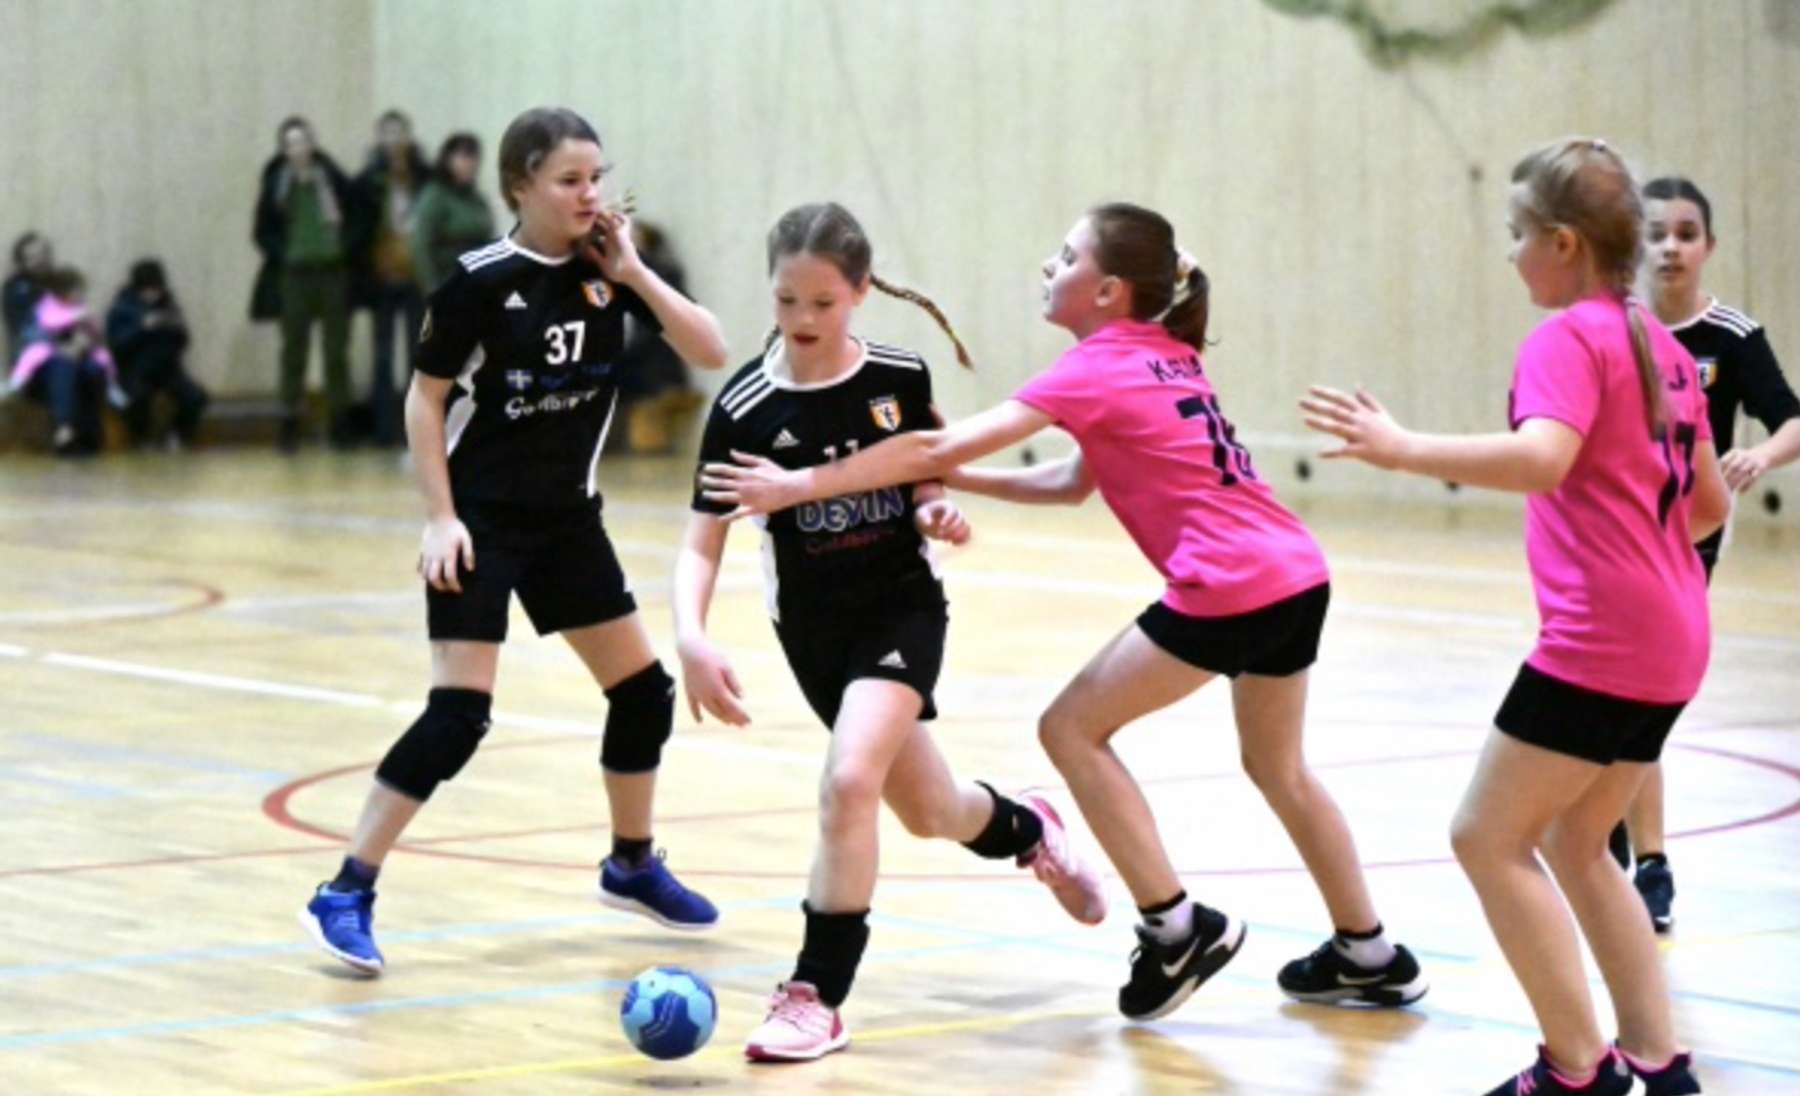 Nädalavahetusel selgub Vasalemmas tütarlaste D2 vanuseklassi karikavõitja 2023 Eesti karikavõistlustel käsipallis